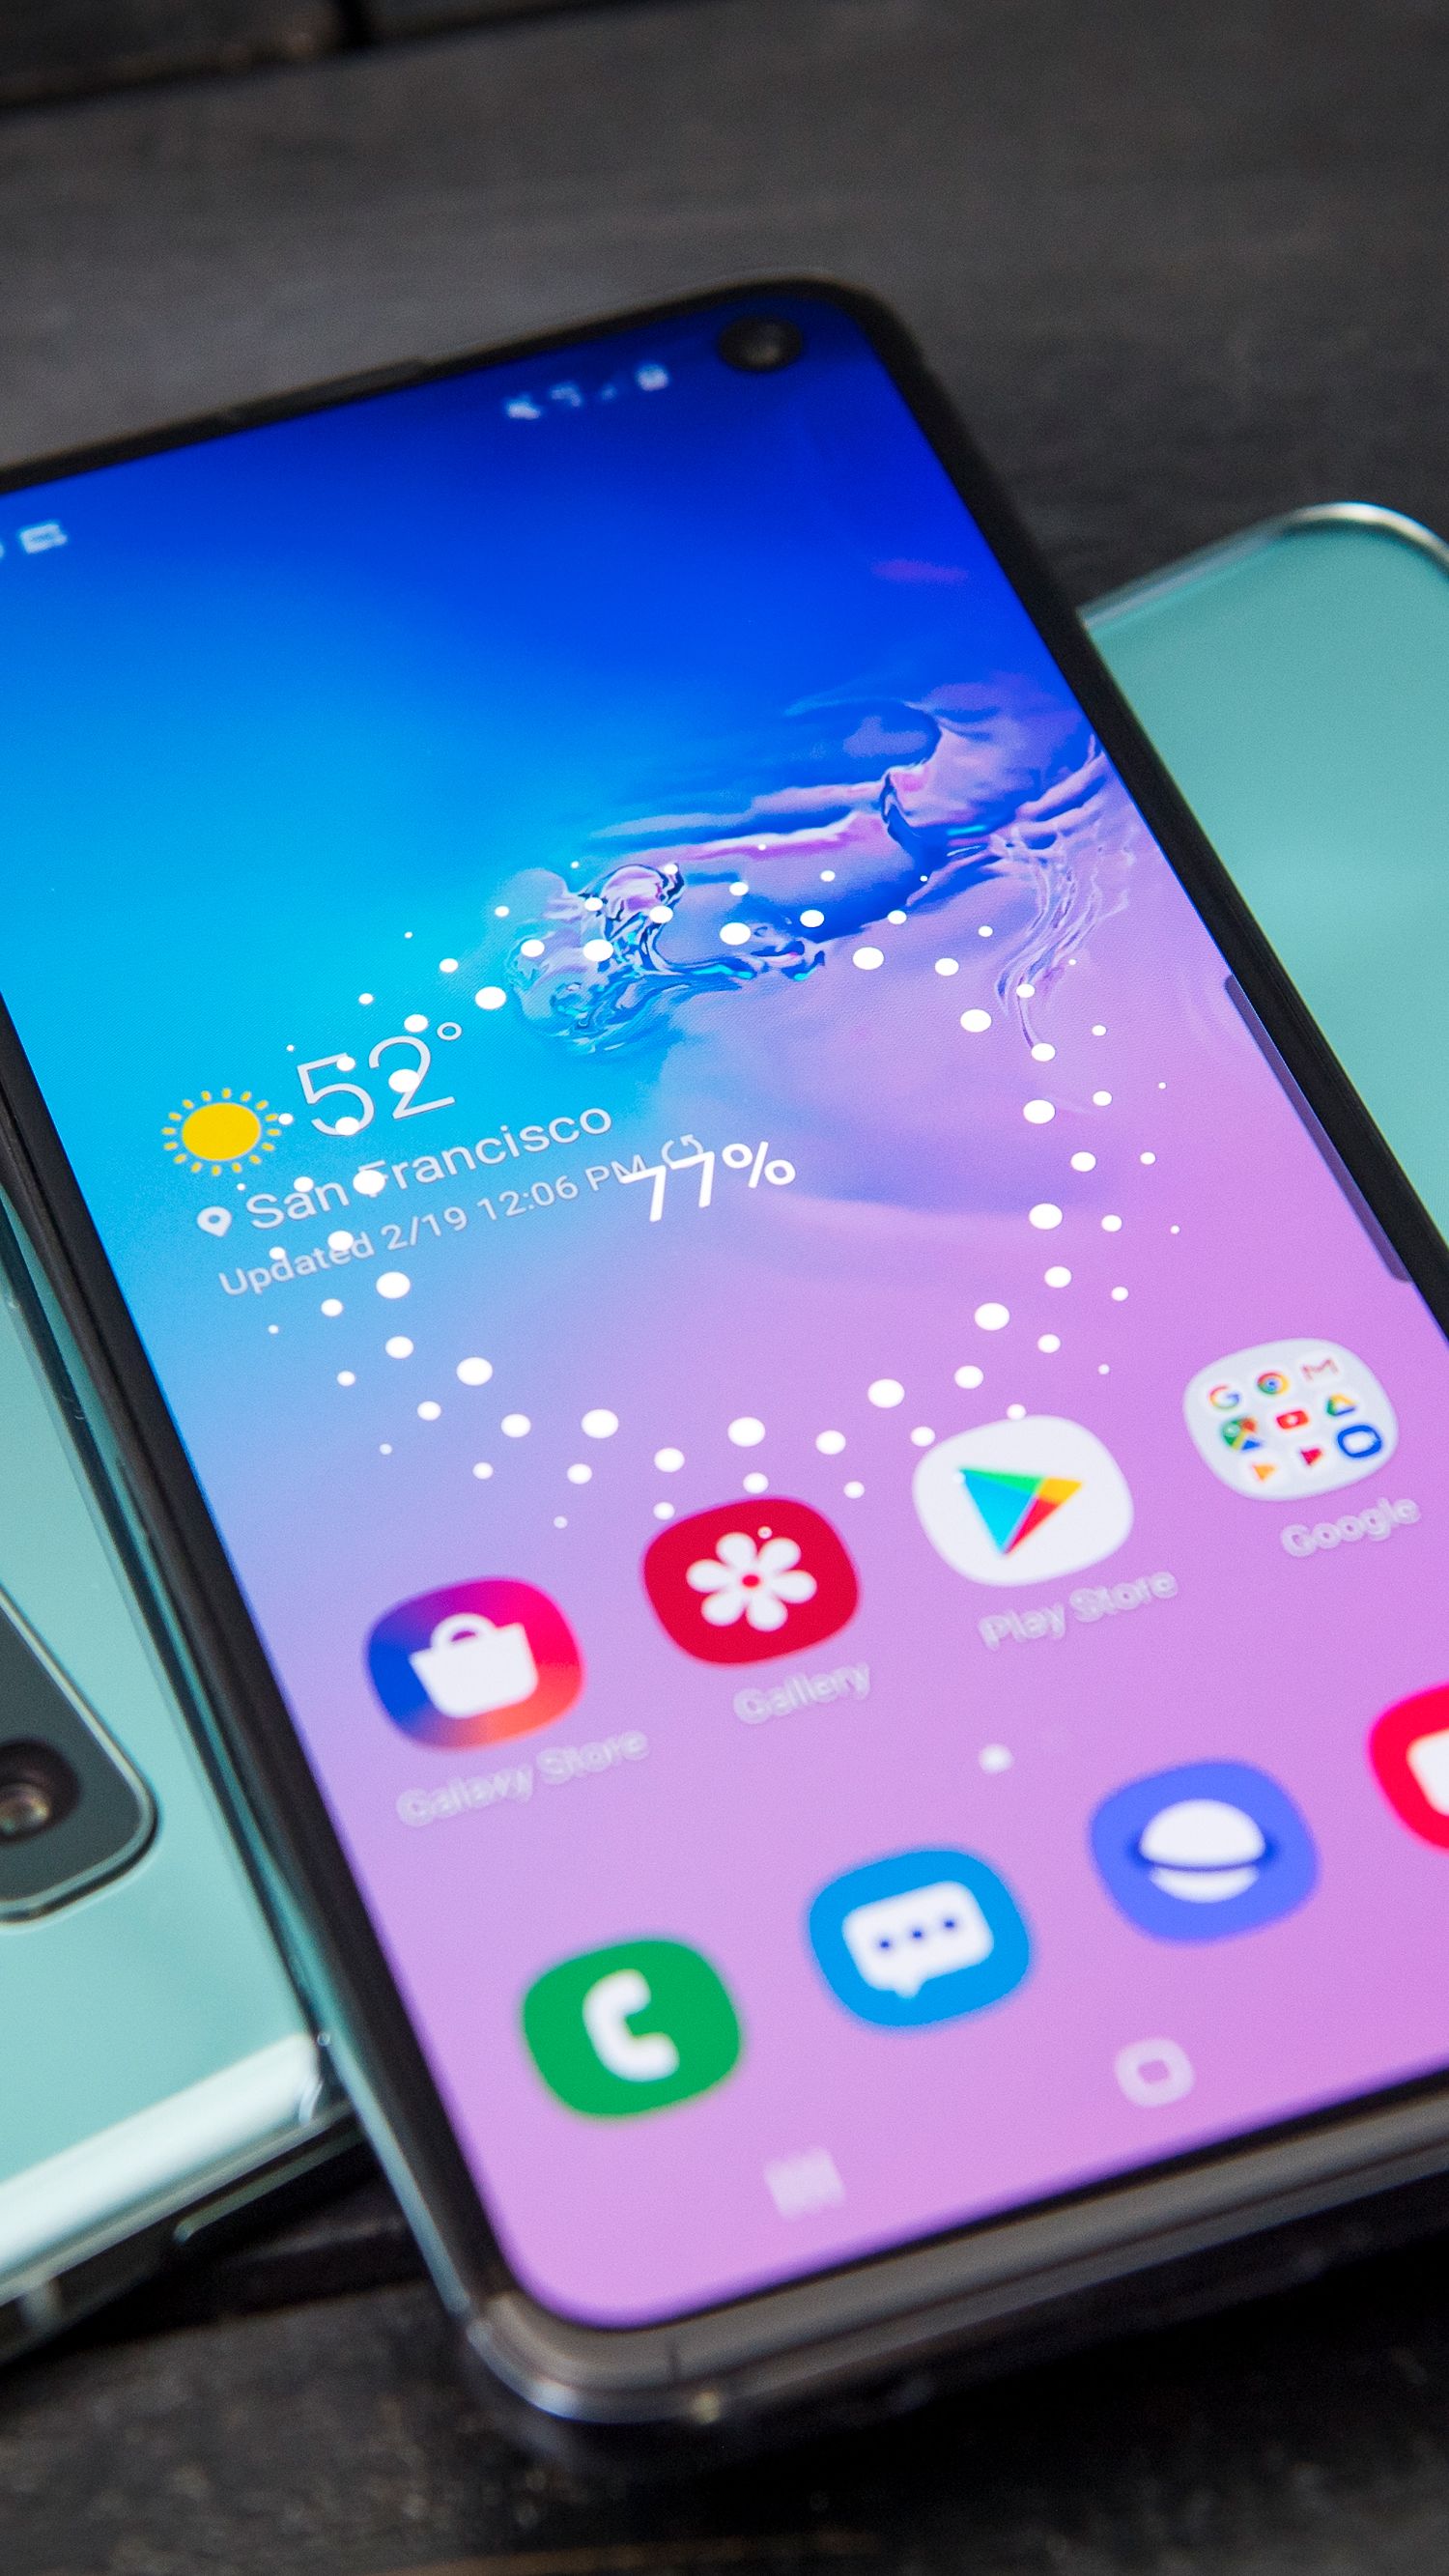 Điện thoại Samsung Galaxy S10 là một trong những sản phẩm hàng đầu của Samsung với thiết kế đẹp mắt, tính năng đa dạng và hiệu suất mạnh mẽ. Hãy xem hình ảnh của Samsung Galaxy S10 để khám phá thêm về những tính năng tuyệt vời của chiếc điện thoại này.